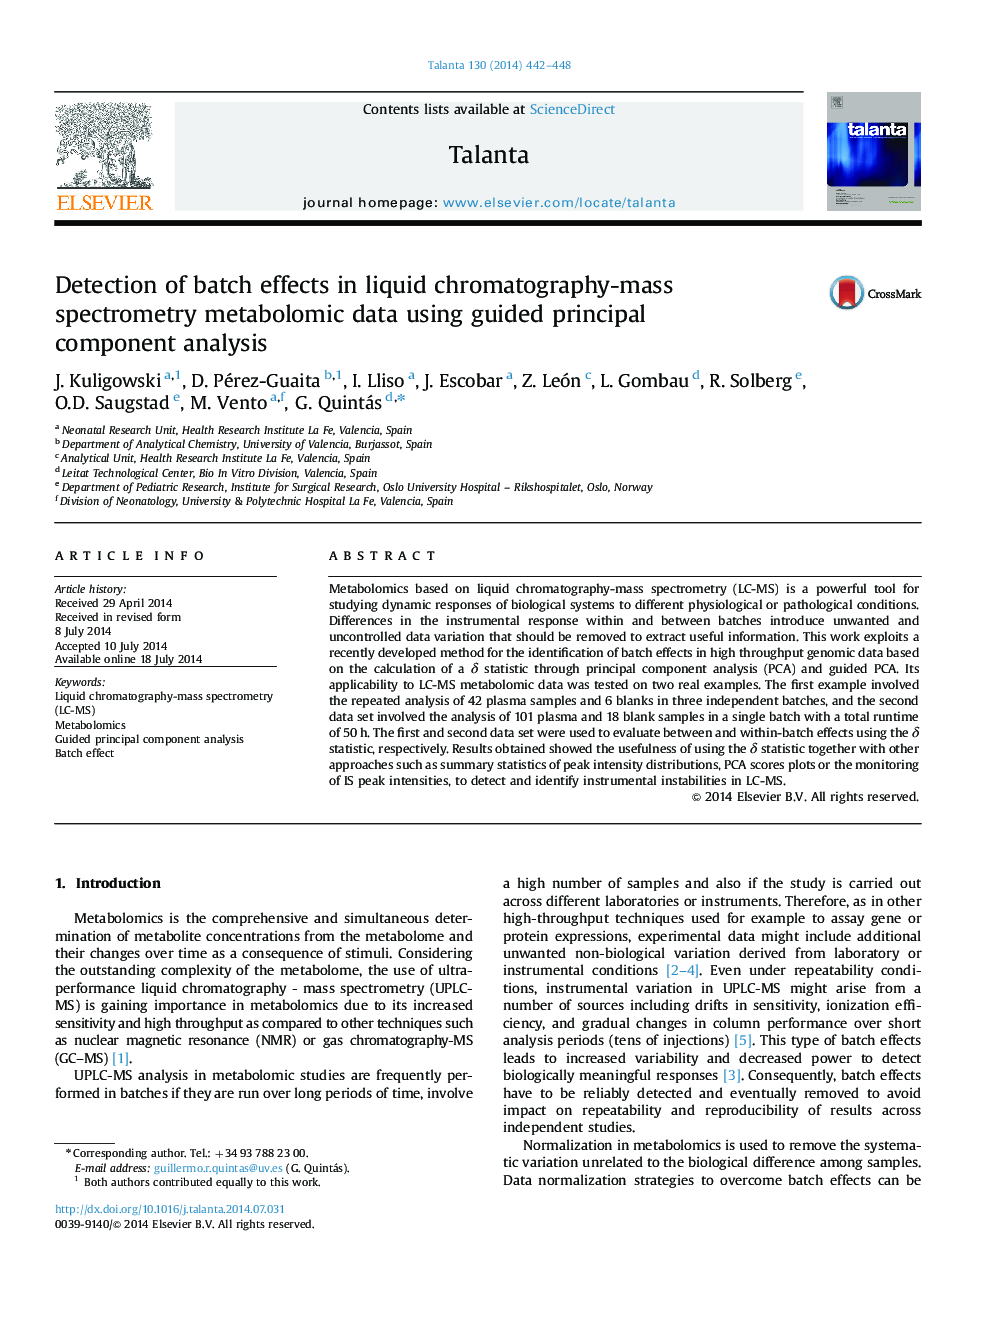 تشخیص اثرات دسته ای در داده های متابولومیک طیف سنجی کروماتوگرافی مایع با استفاده از تجزیه و تحلیل مولفه های هدایت شده 